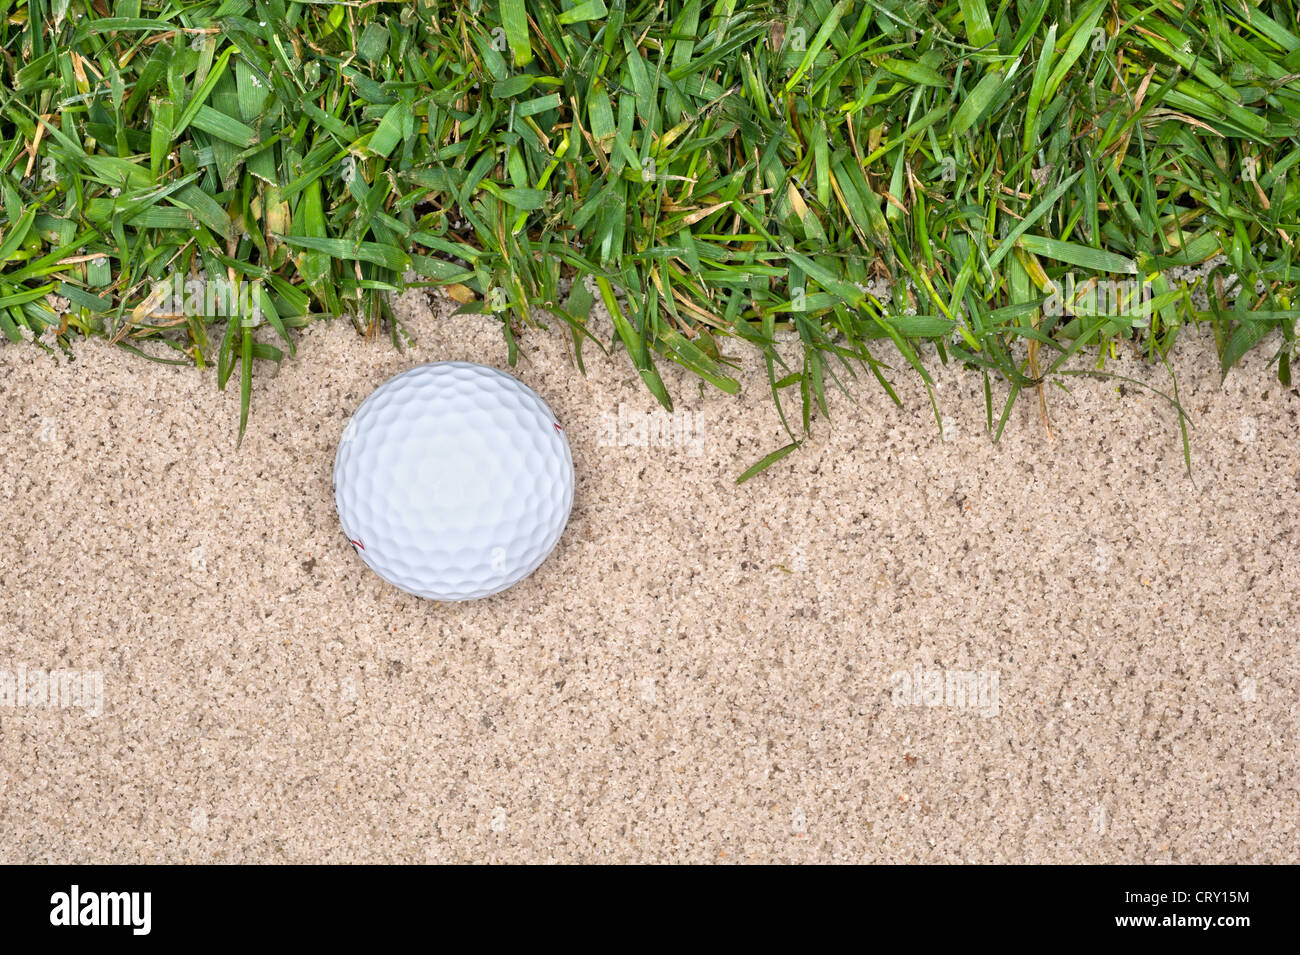 Une balle de golf dans une fosse de sable à côté de la dure met en évidence les erreurs qu'on peut faire jouer le jeu. Banque D'Images